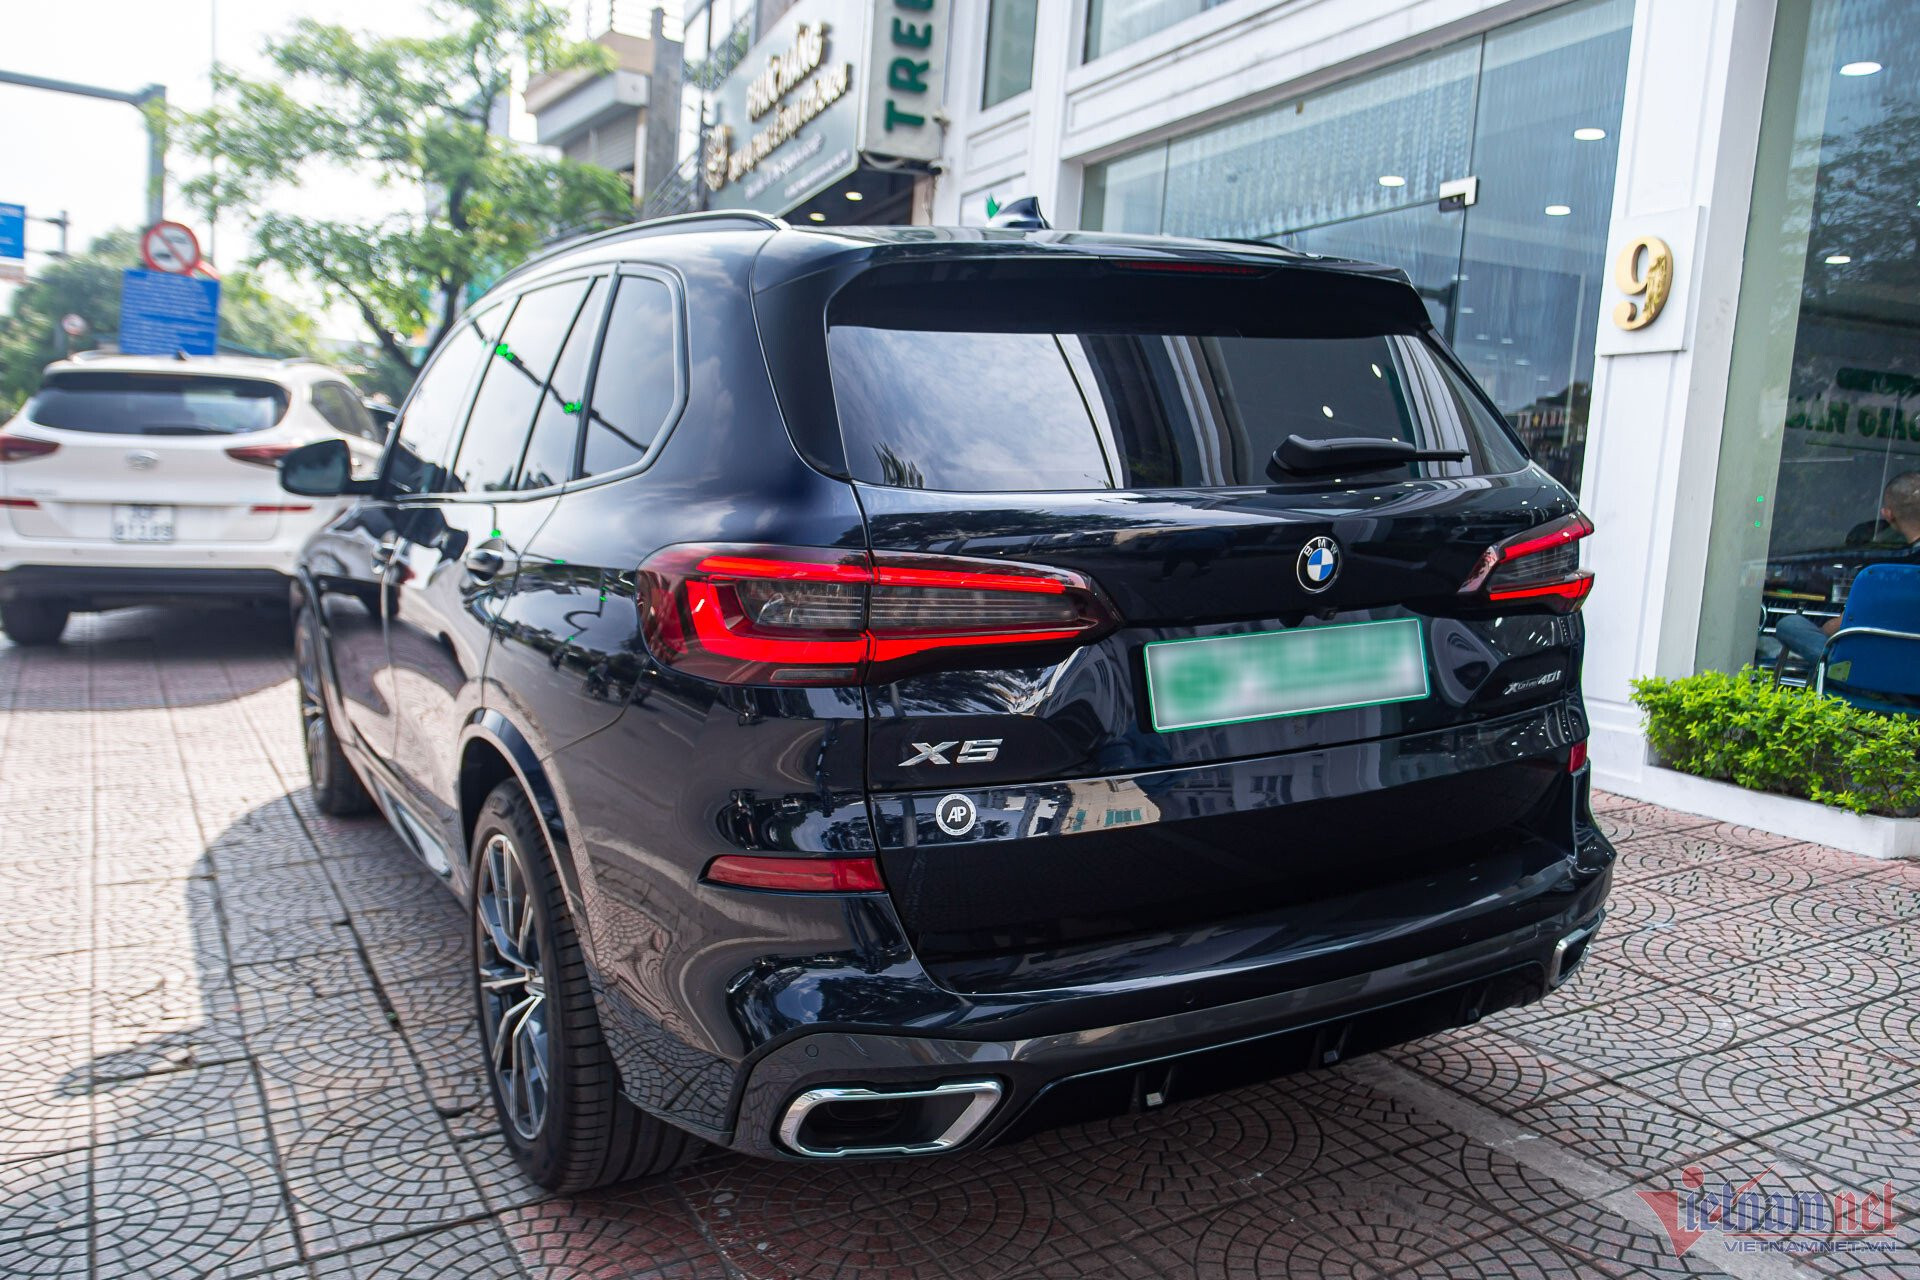 BMW X5 đời 2020 mới lăn bánh 100 km, chủ xe bán lỗ hơn 1 tỷ đồng - 2